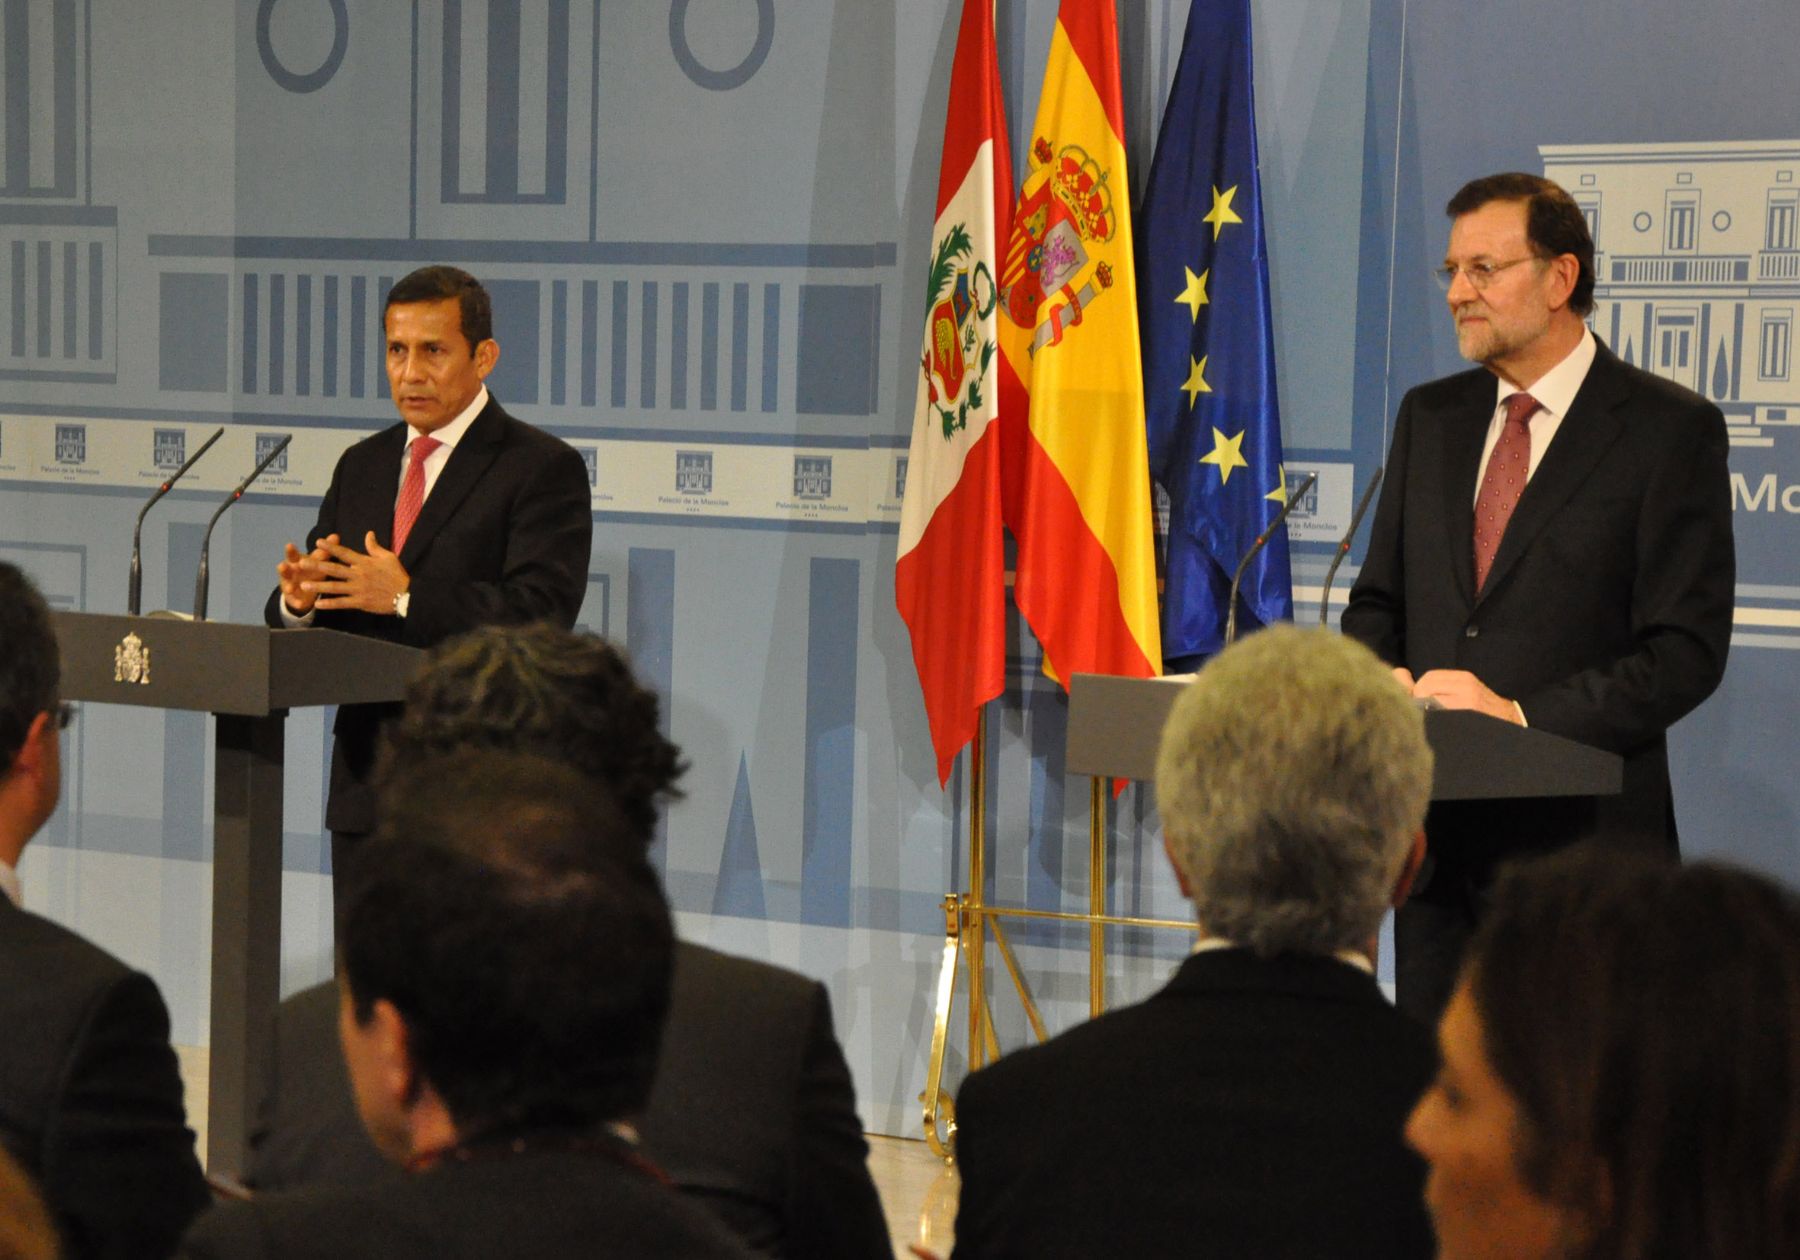 Presidente Ollanta Humala y presidente del gobierno español, Mariano Rajoy en conferencia de prensa.
Foto: ANDINA/Prensa Presidencia